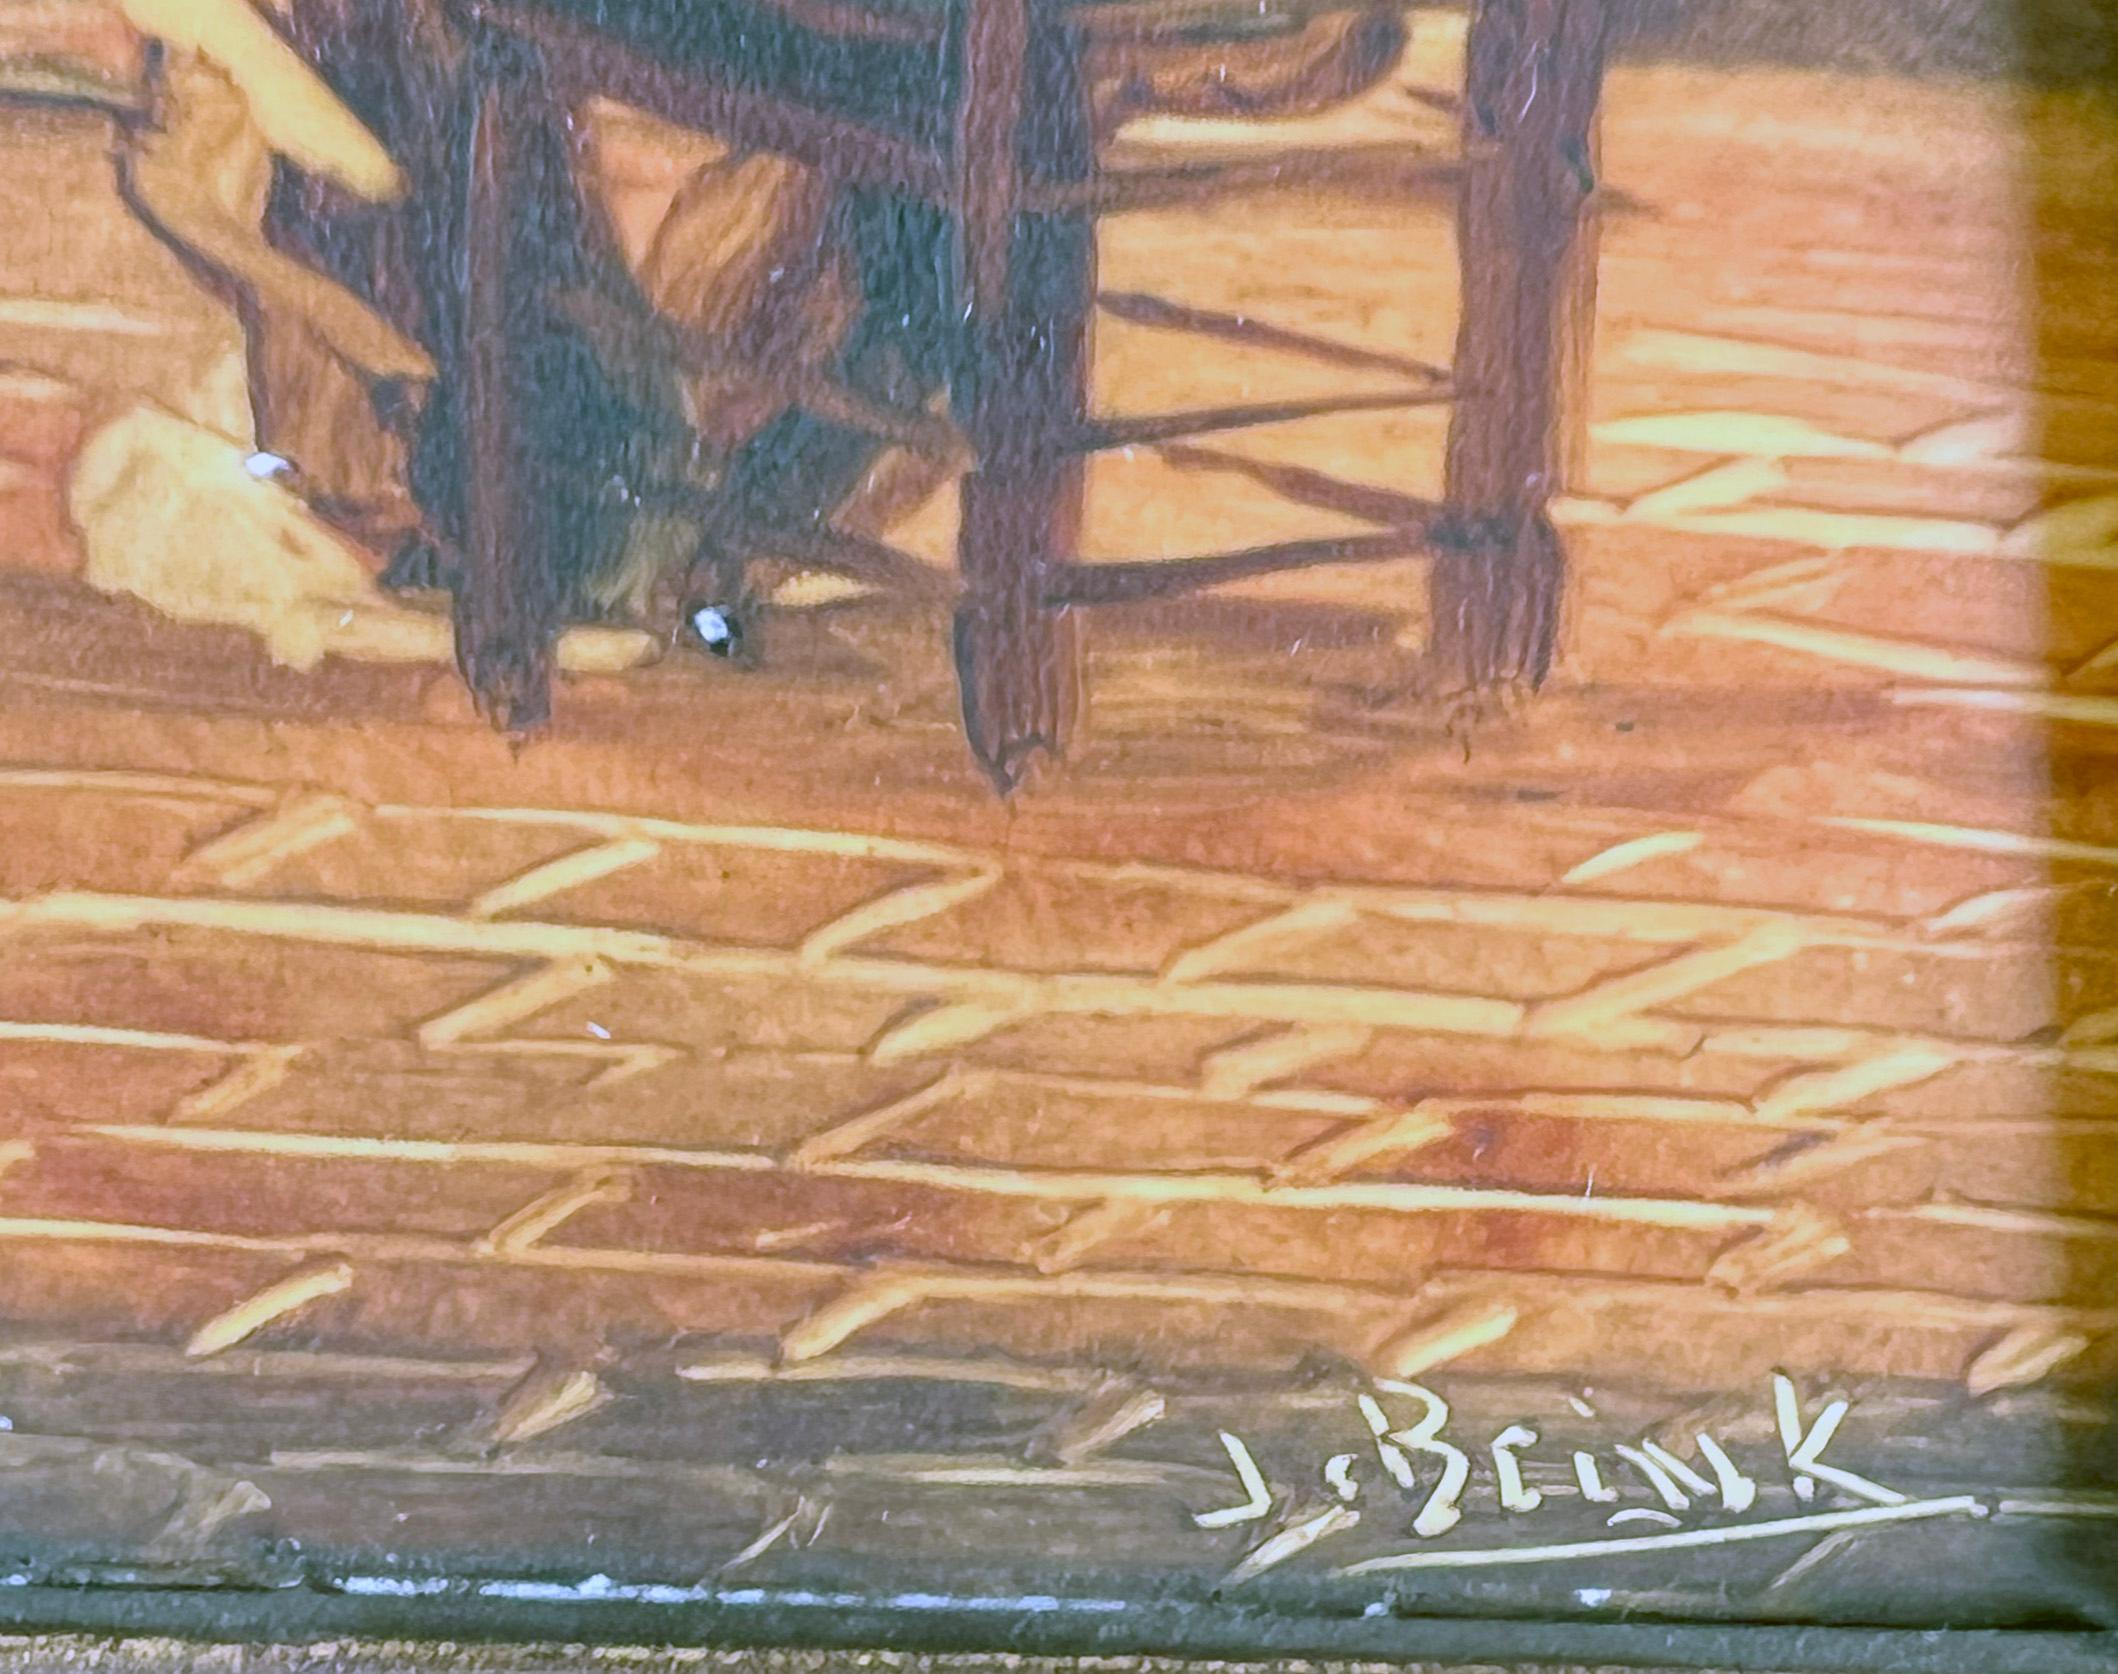 Intérieur hollandais ancien Child & Man with Chickens and Delft Tiles and Hearth (Enfant et homme avec poulets, carreaux de Delft et foyer)

Une huile sur carreaux de céramique représentant une scène hollandaise ancienne avec un enfant et son